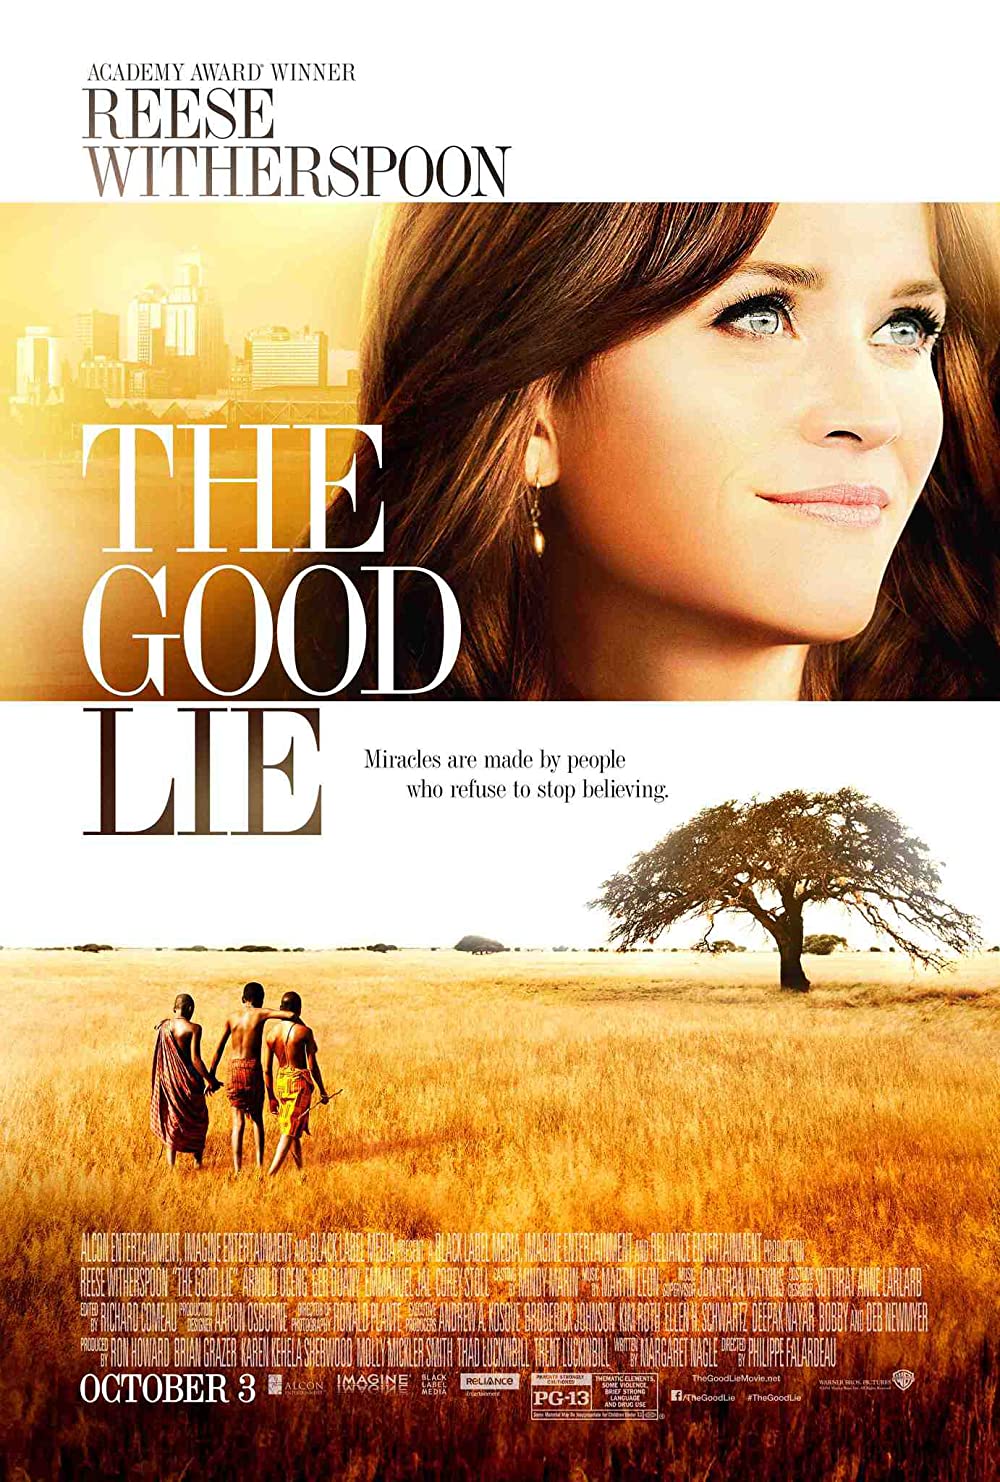 Filmbeschreibung zu The Good Lie